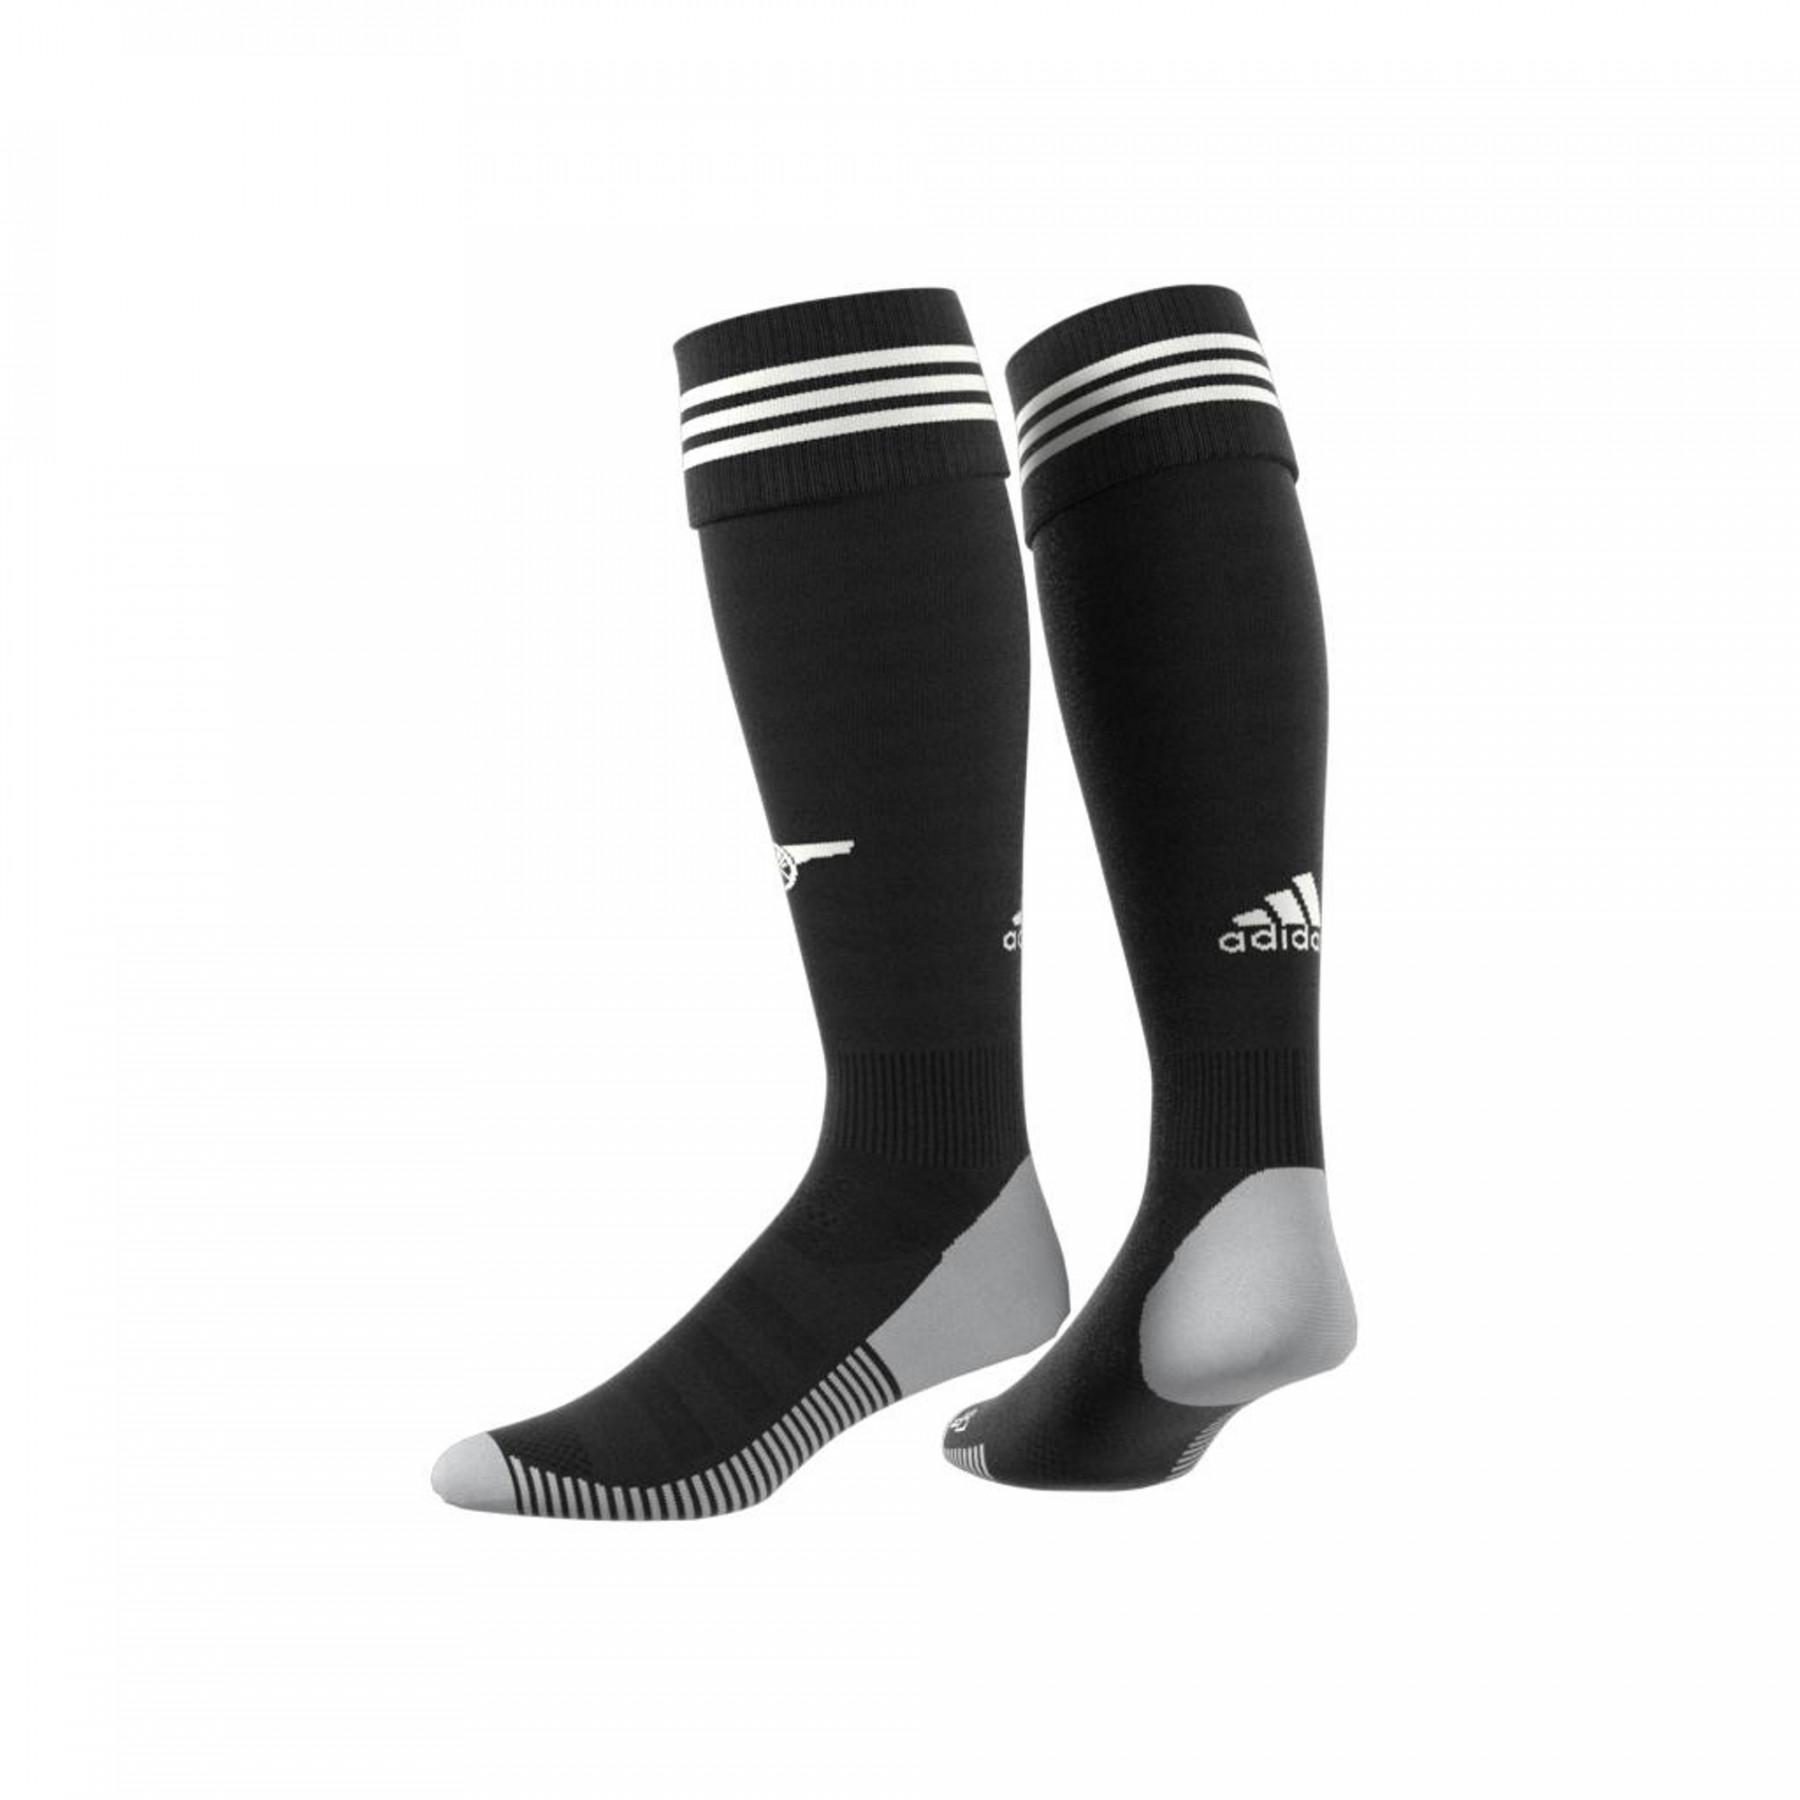 Home goalkeeper socks Arsenal 2020/21